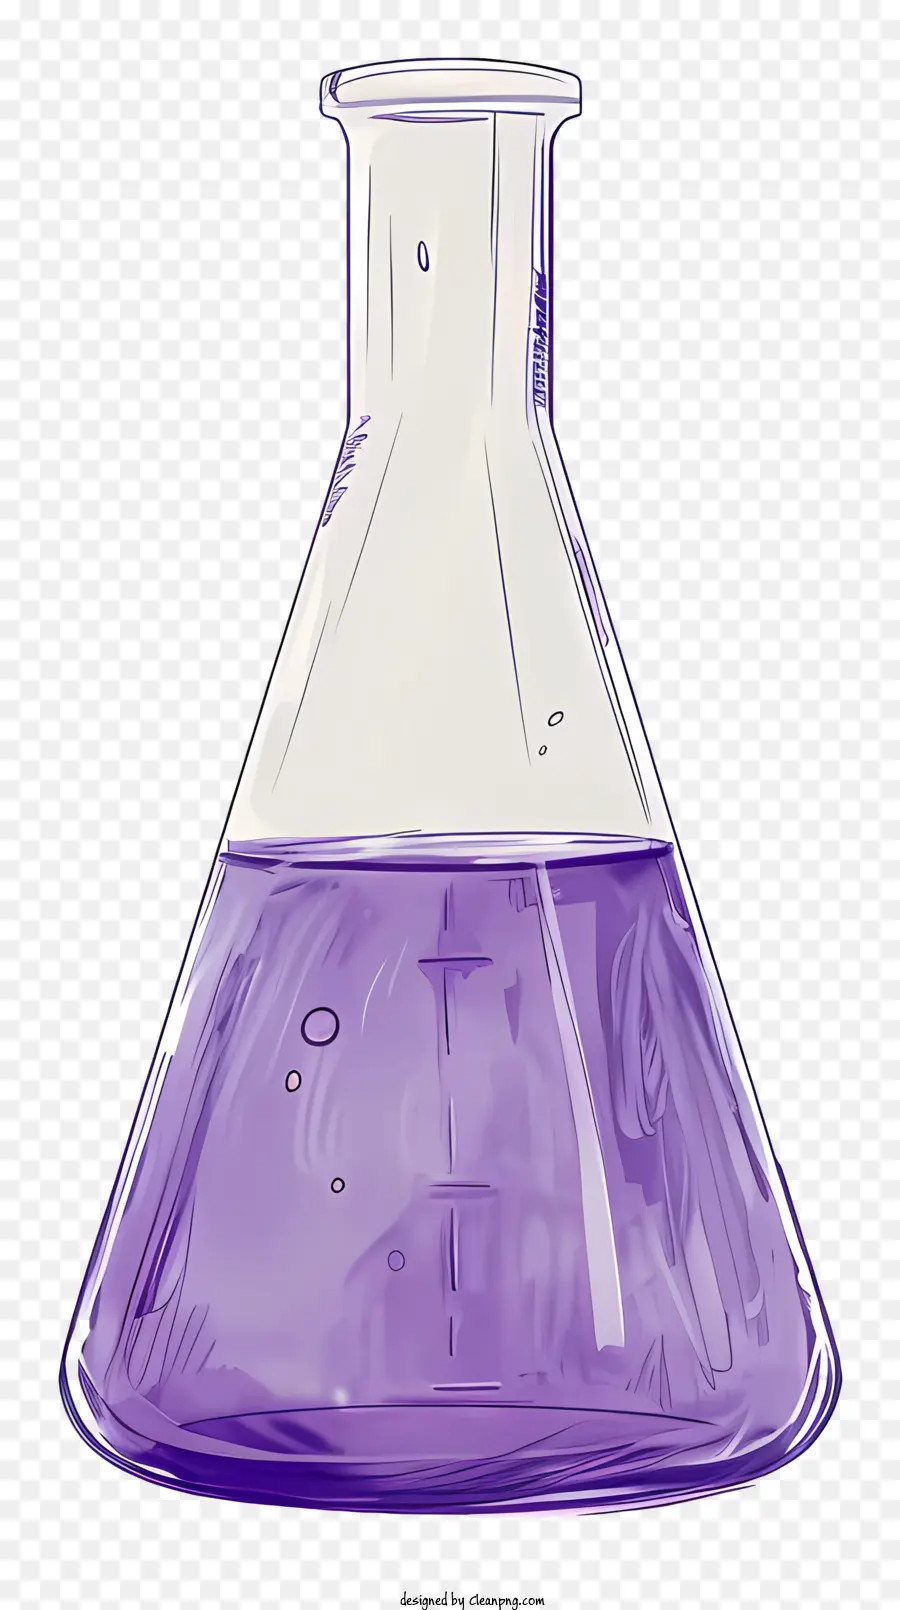 erlenmeyer flask purple beak flask glass flask silver base flask clear glass body